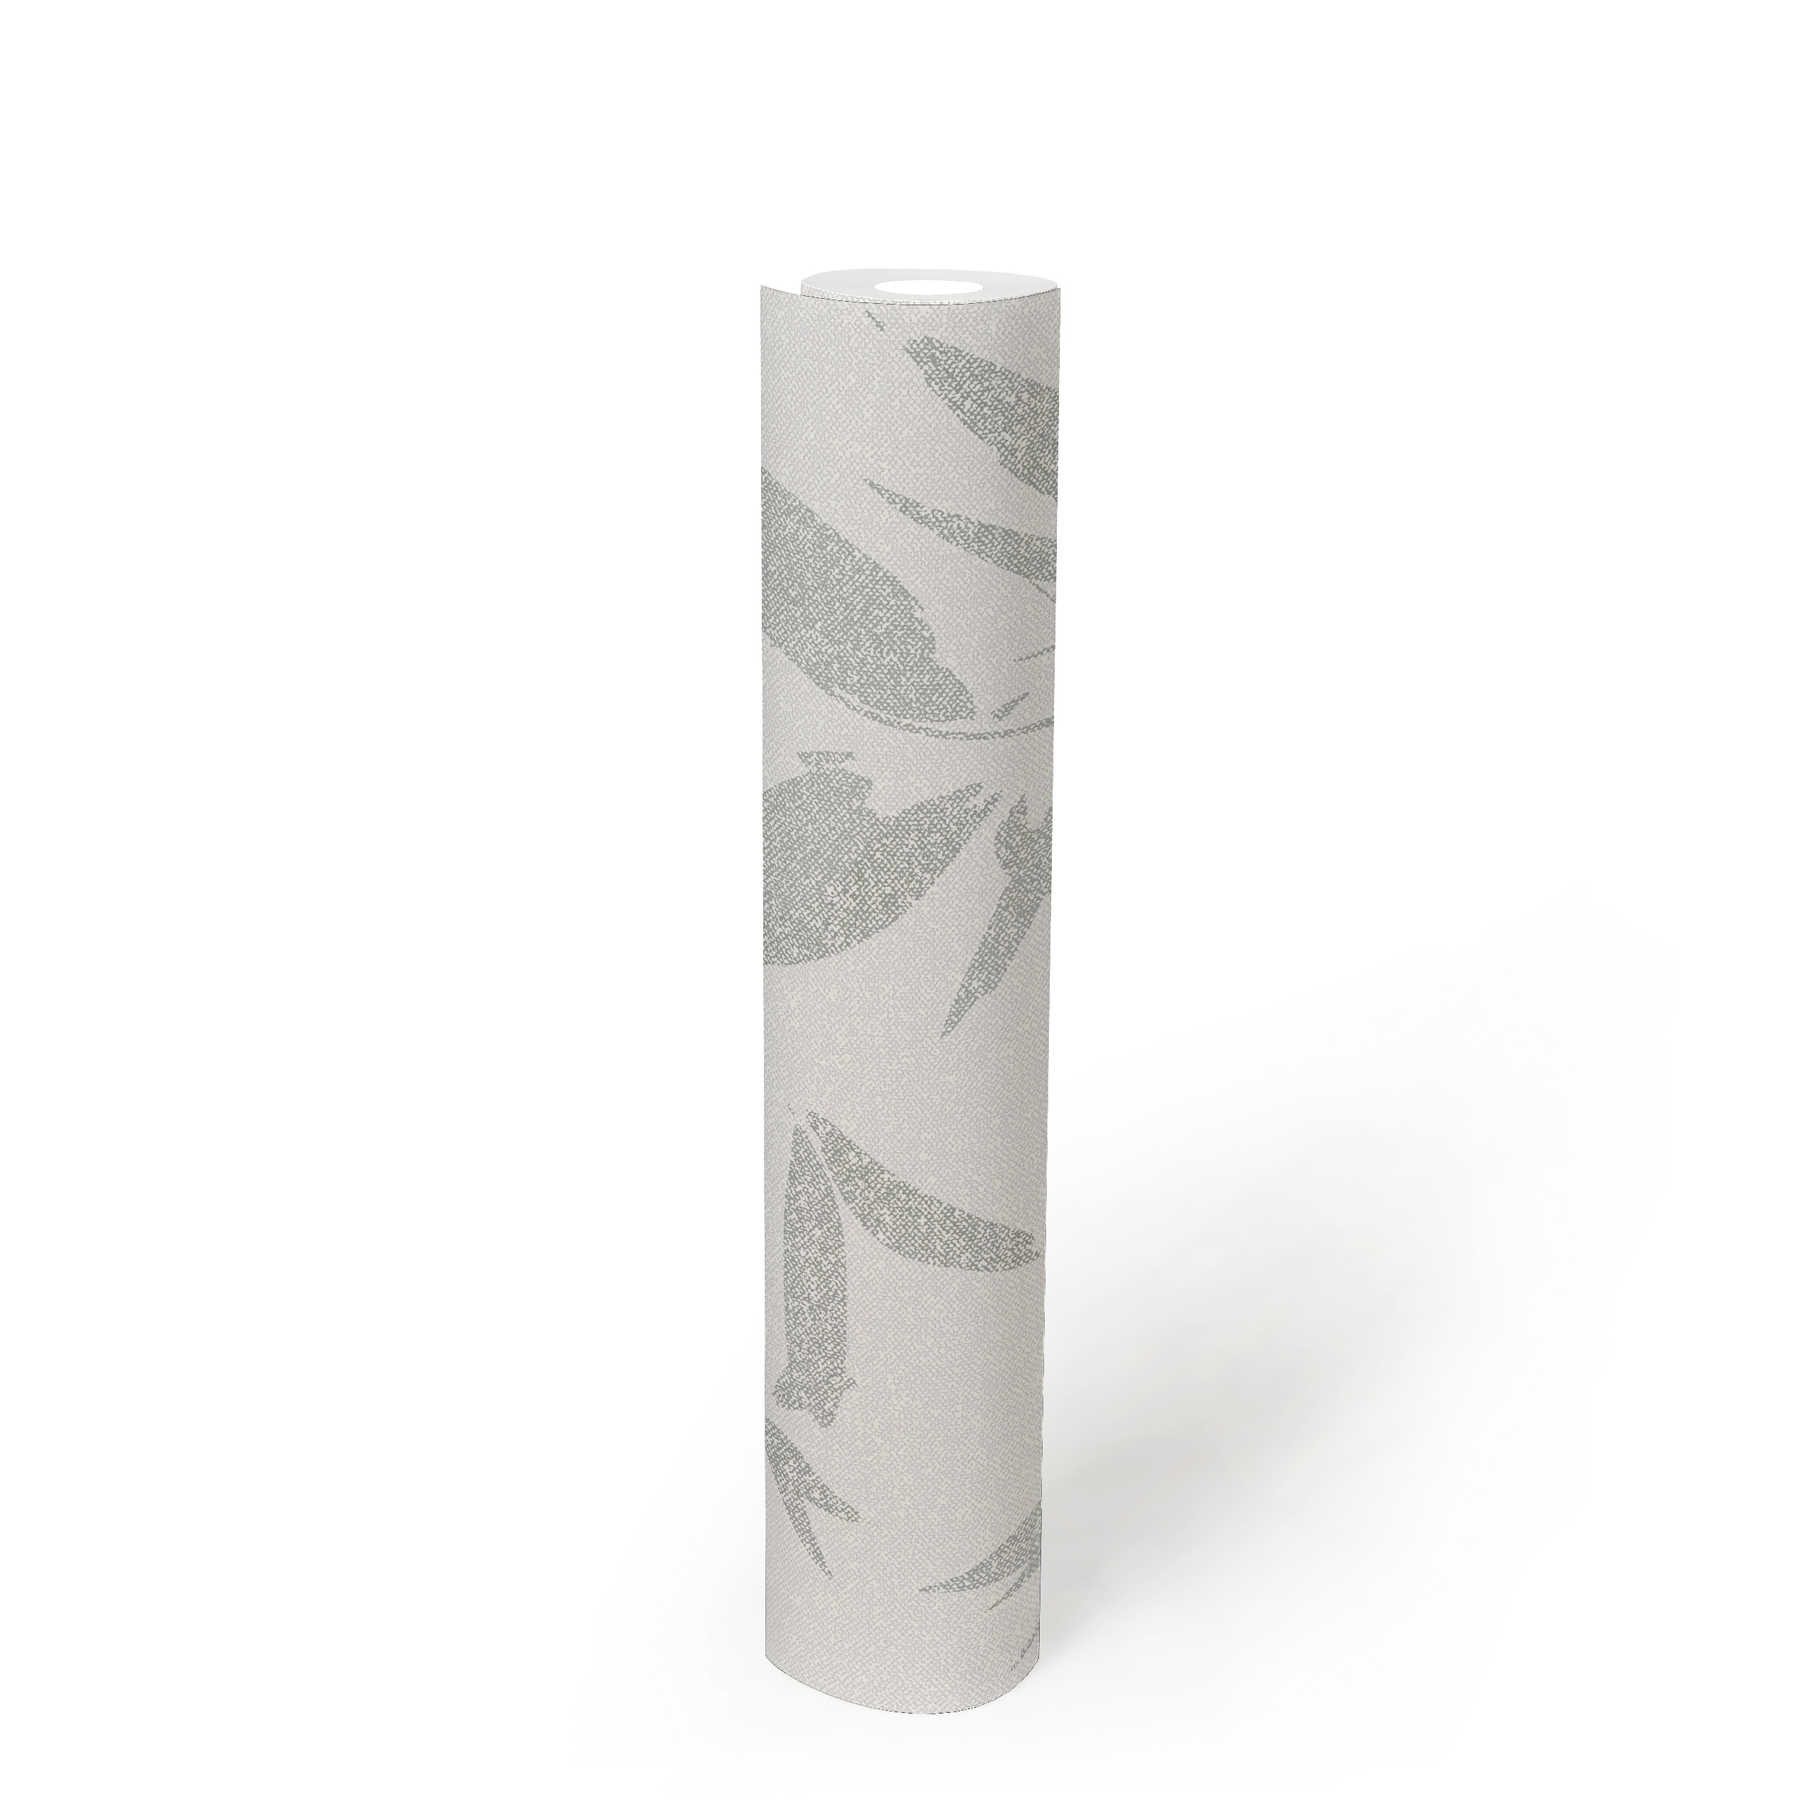             Carta da parati in tessuto non tessuto con motivo a foglie astratto, aspetto tessile - bianco, crema, grigio
        